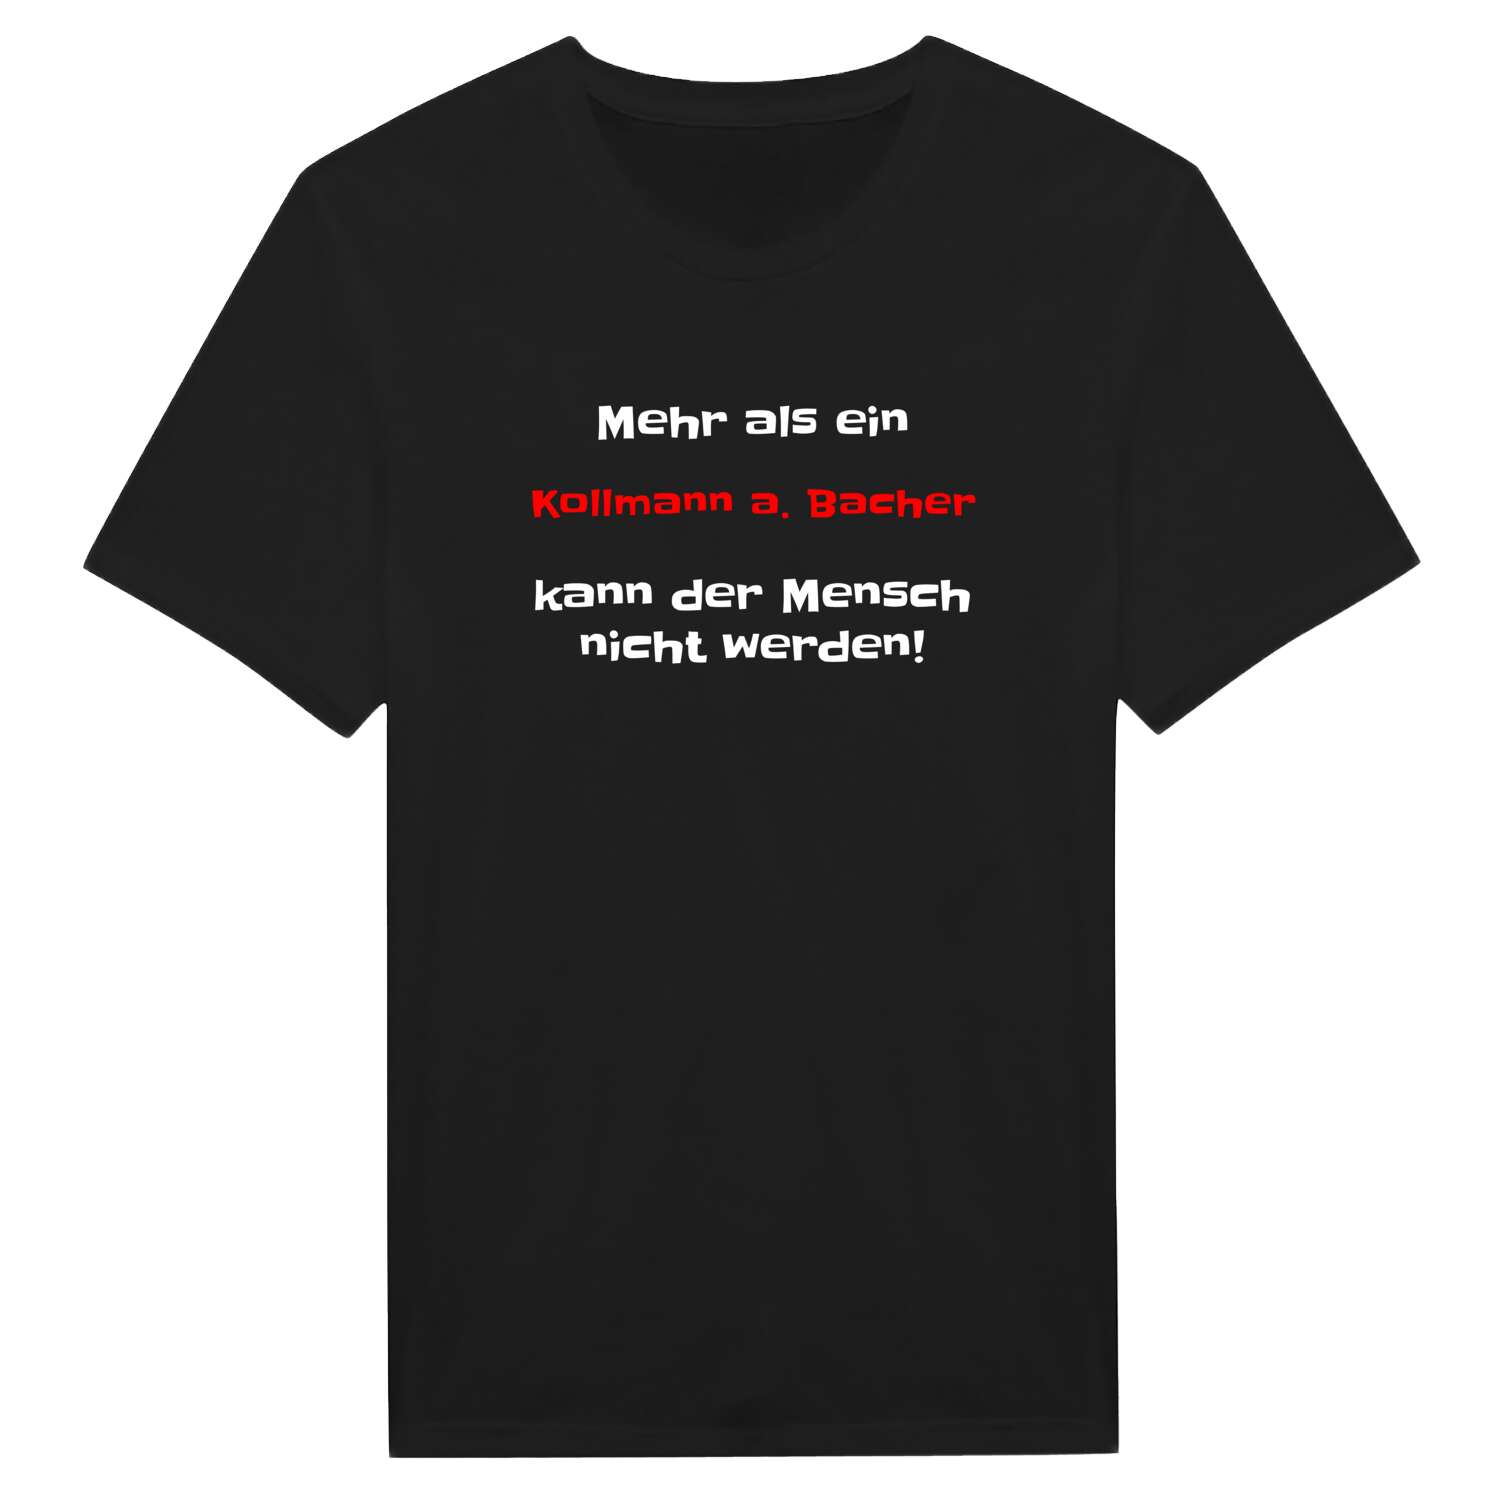 Kollmann a. Bach T-Shirt »Mehr als ein«